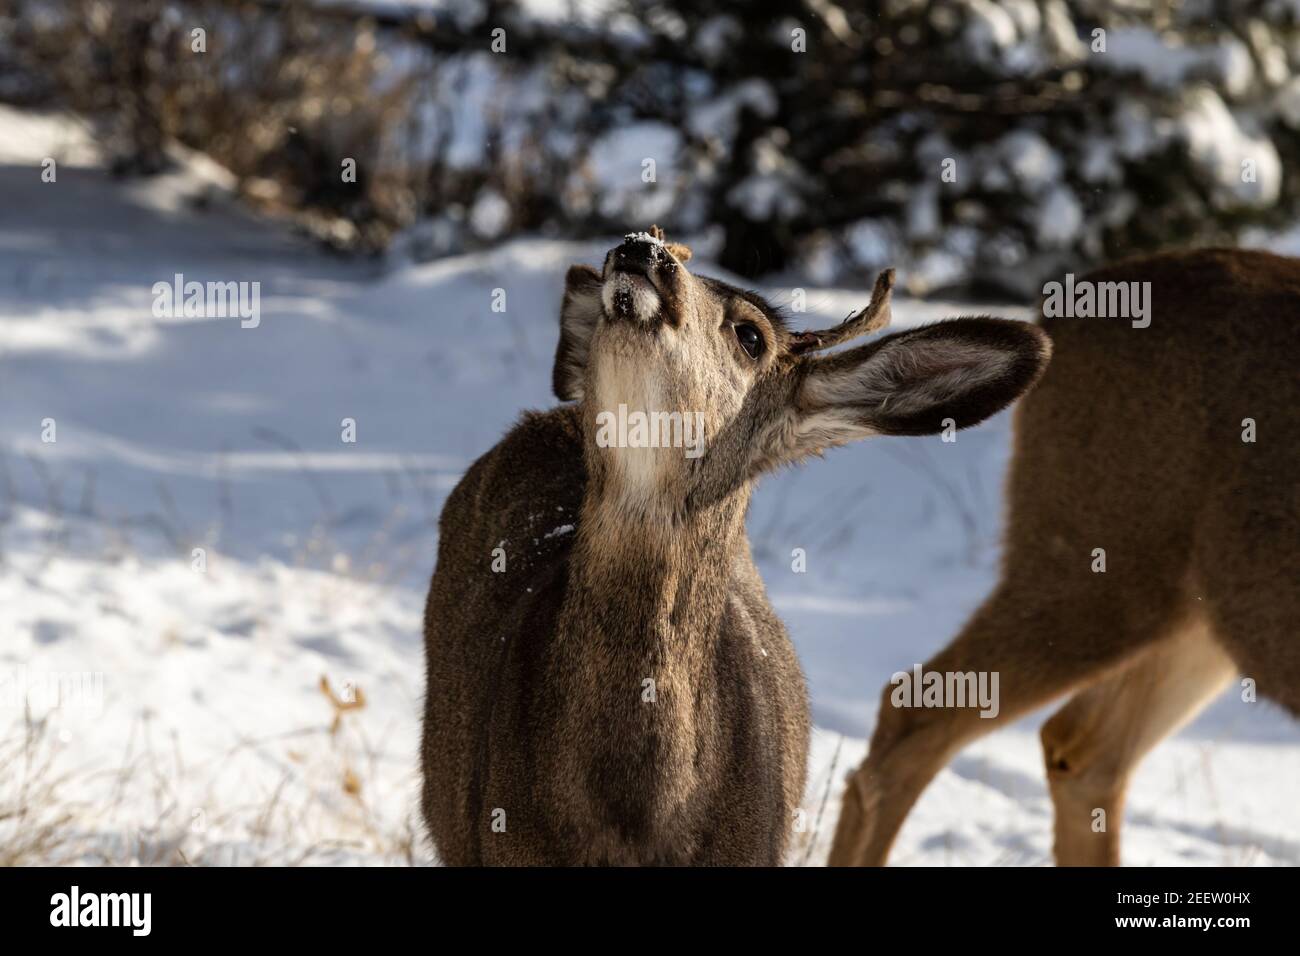 Cervo Kaibab maschio (sottospecie di cervo mulo) con corna; testa rialzata, neve in faccia. Parco nazionale del Grand Canyon. Neve sullo sfondo. Foto Stock